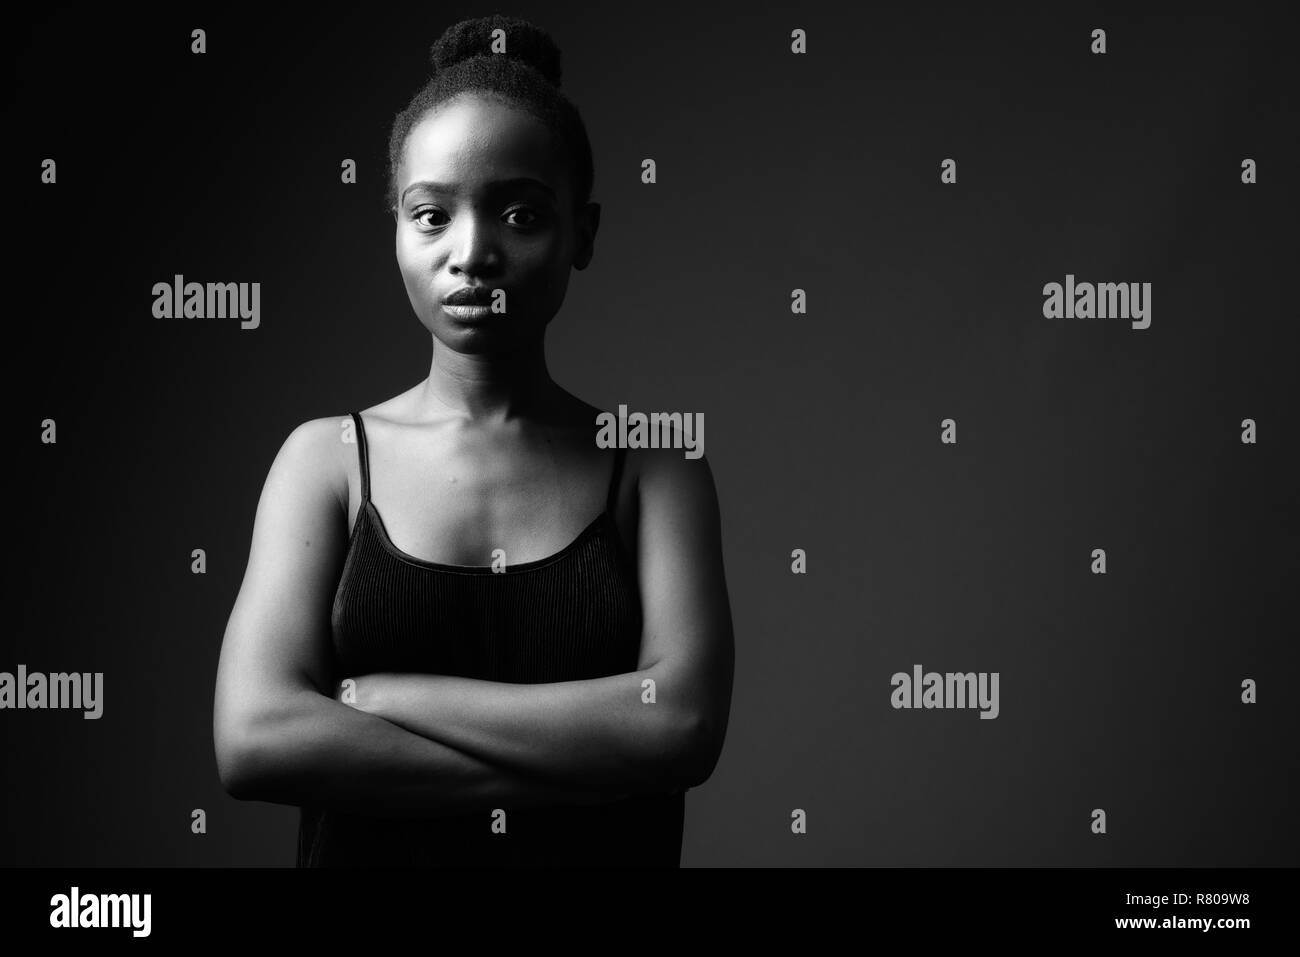 Schwarz-weiß-Porträt der jungen schönen afrikanischen Frau Stockfoto